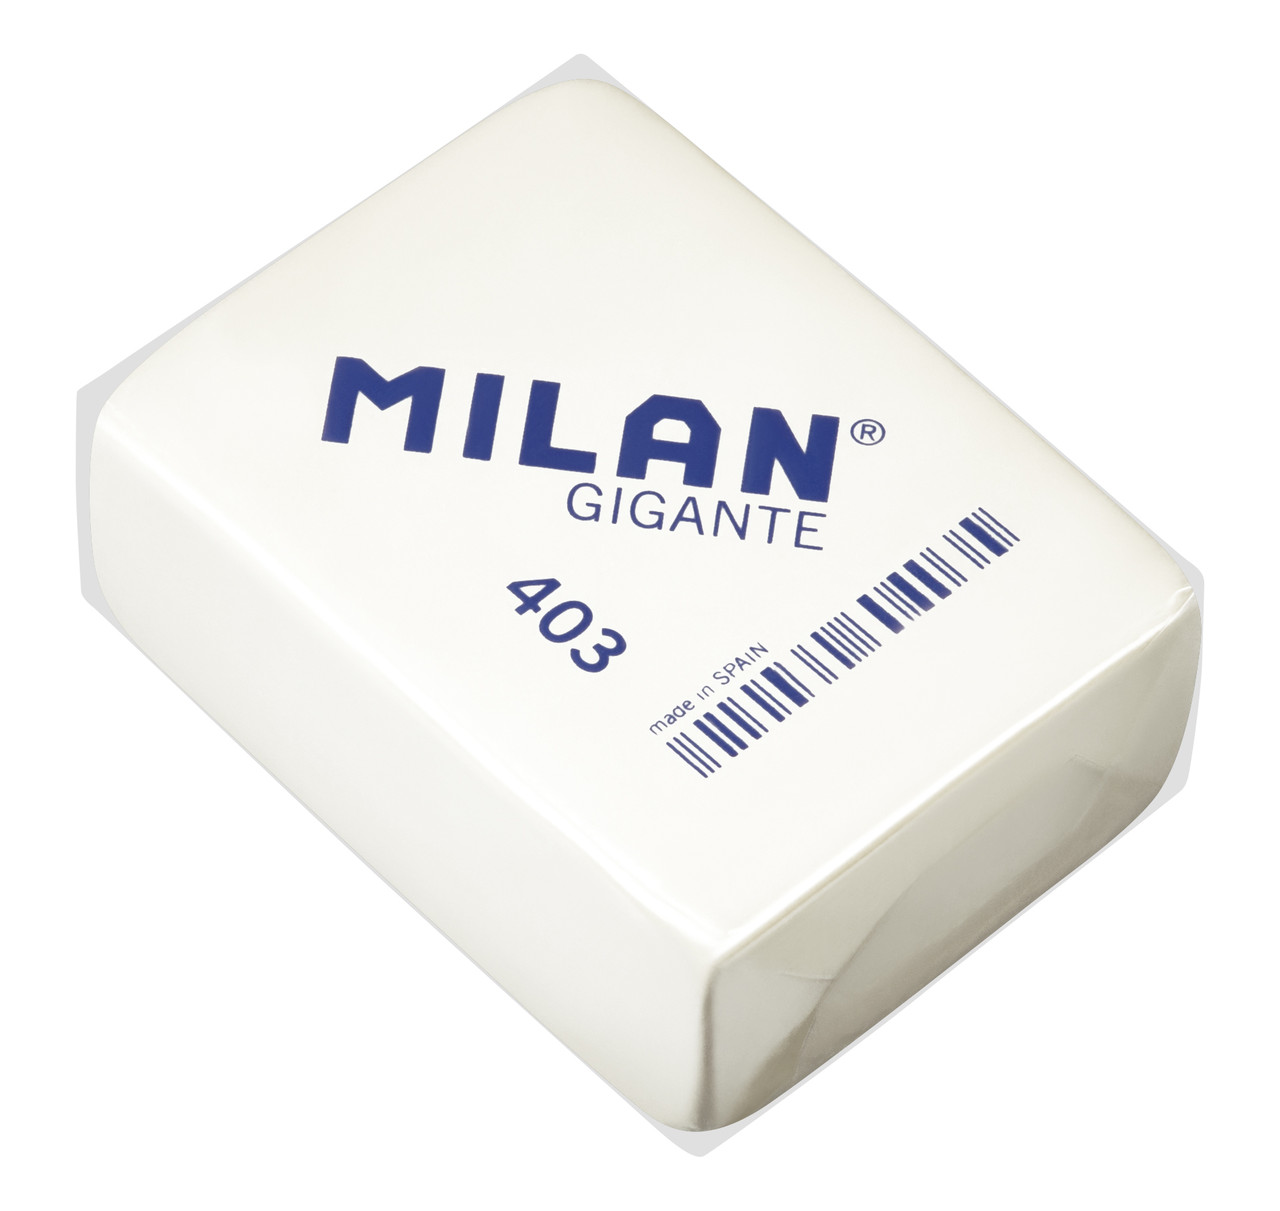 Гумка Milan 403 Gigante для чищення великих ділянок поверхні від кіптяви і т. п.